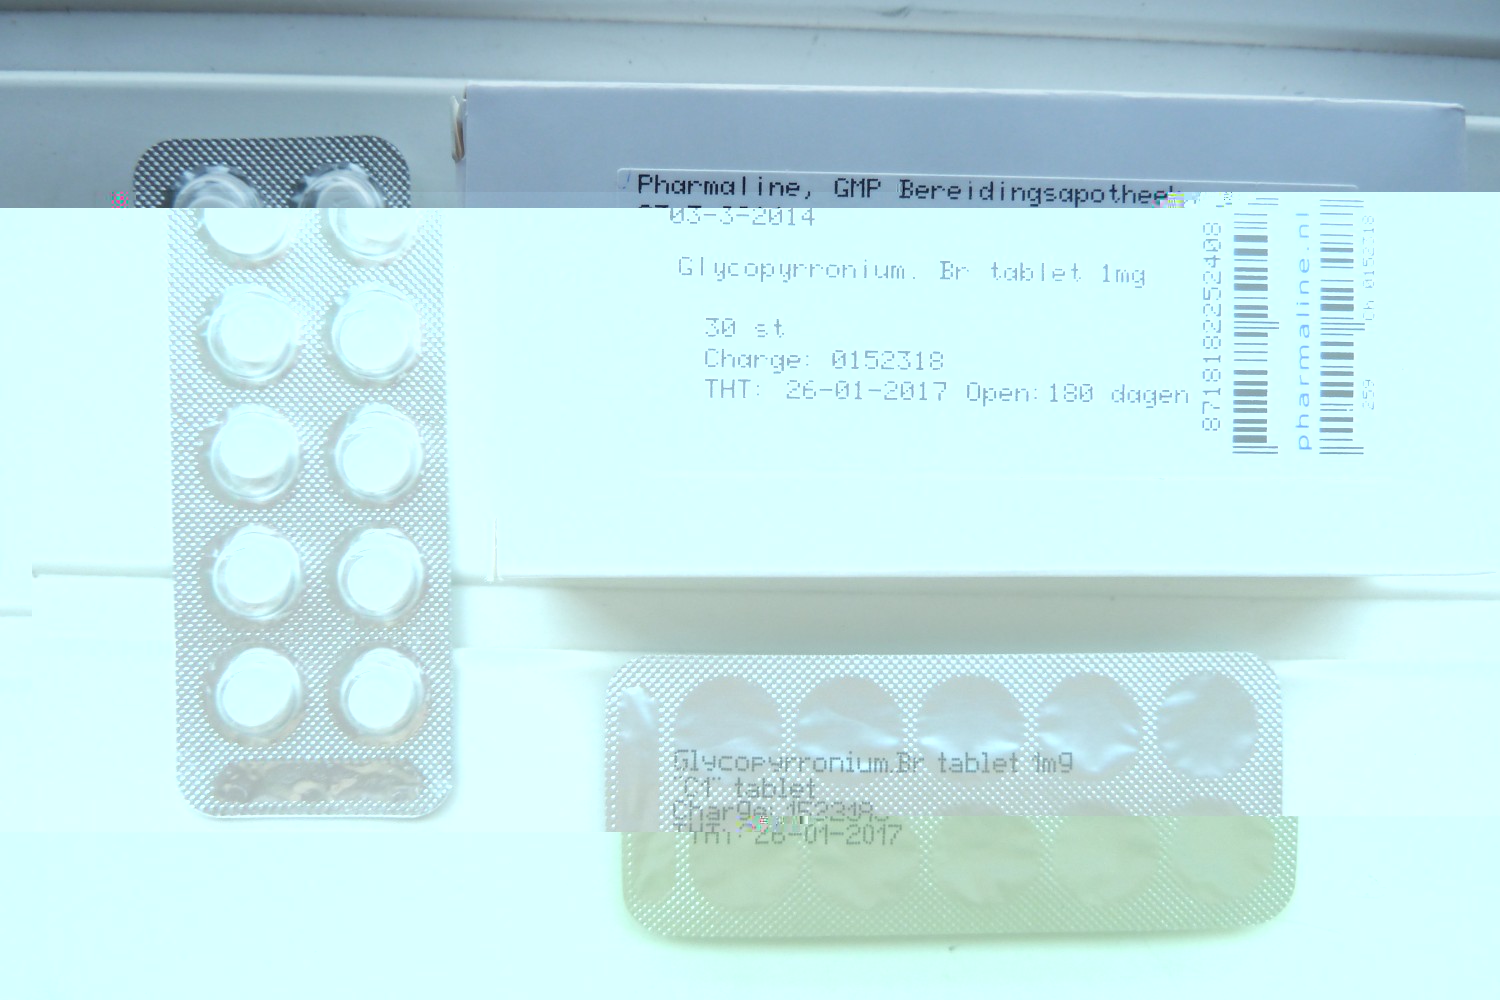 Voor wie moeite heeft arts of apotheker te overtuigen van het bestaan van de tabletten, hierbij een foto als bewijs.<br />Groet, DG